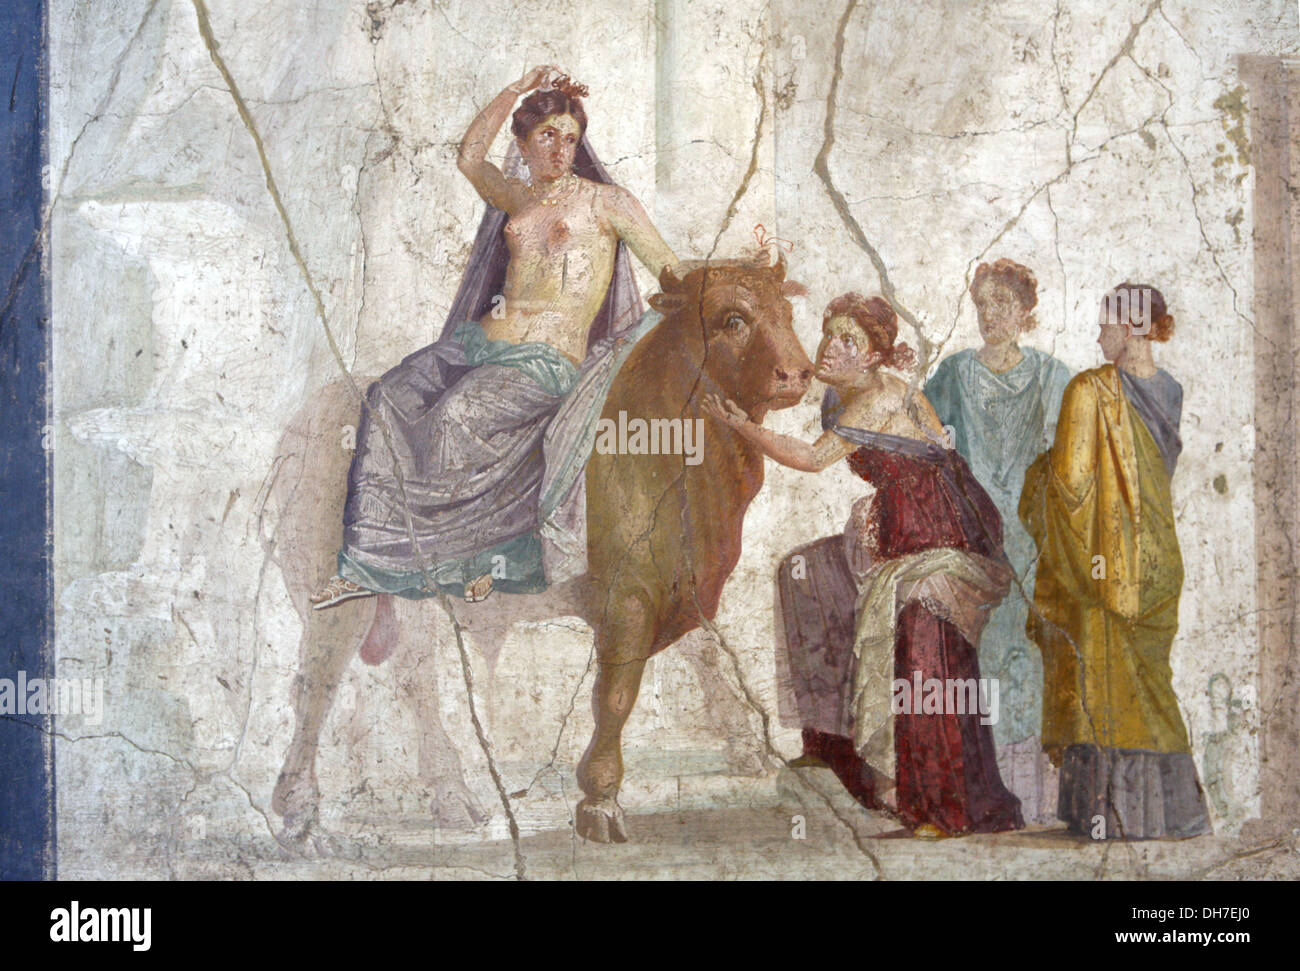 Pintura mural romana fotografías e imágenes de alta resolución - Alamy